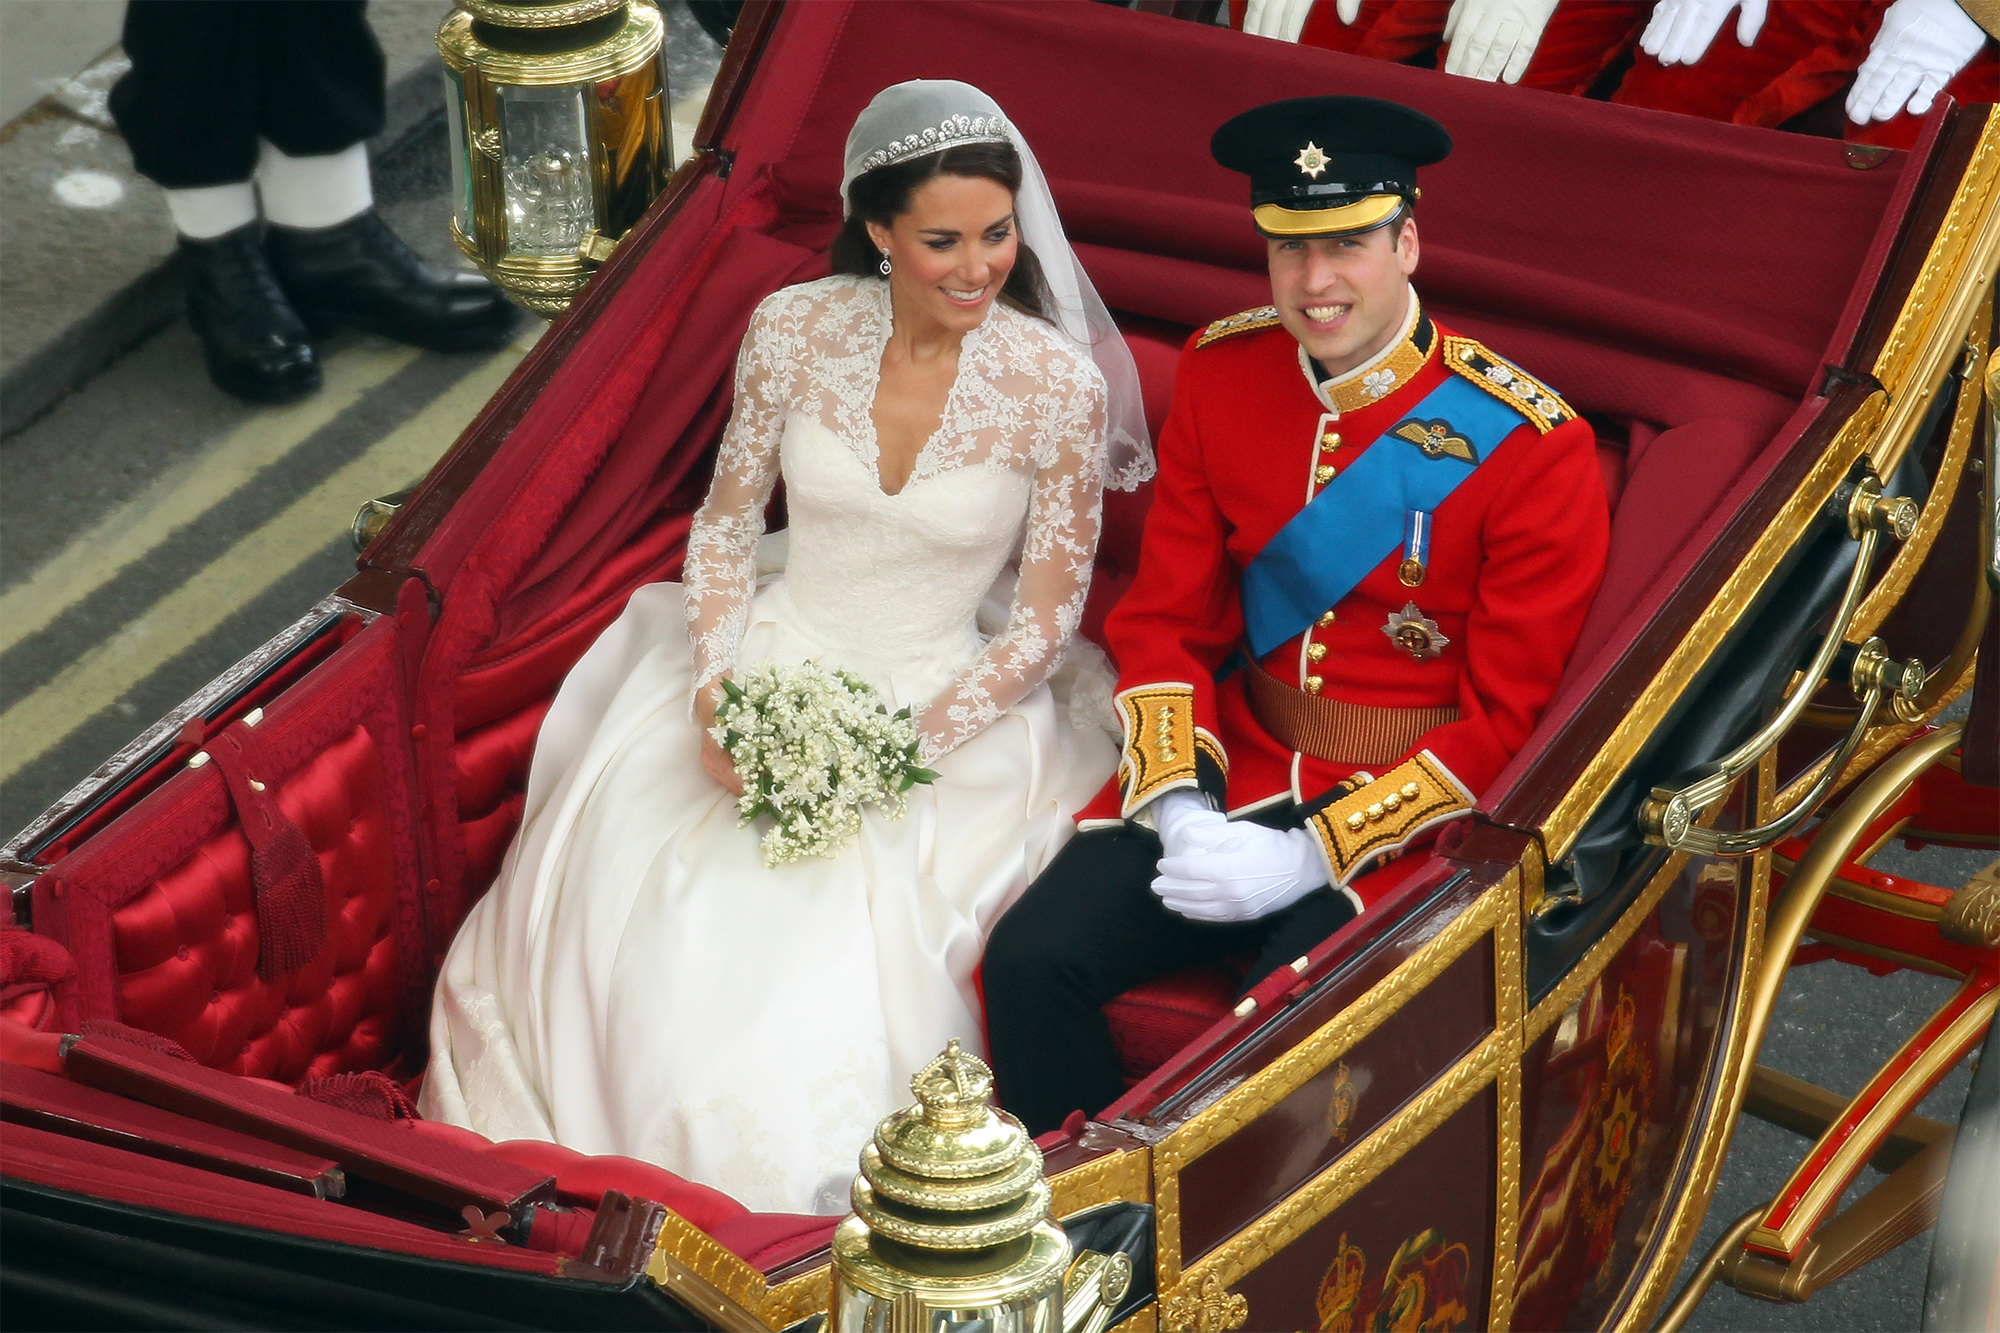 Кейт Міддлтон і принц Вільям здивували весільним портретом: привід серйозний